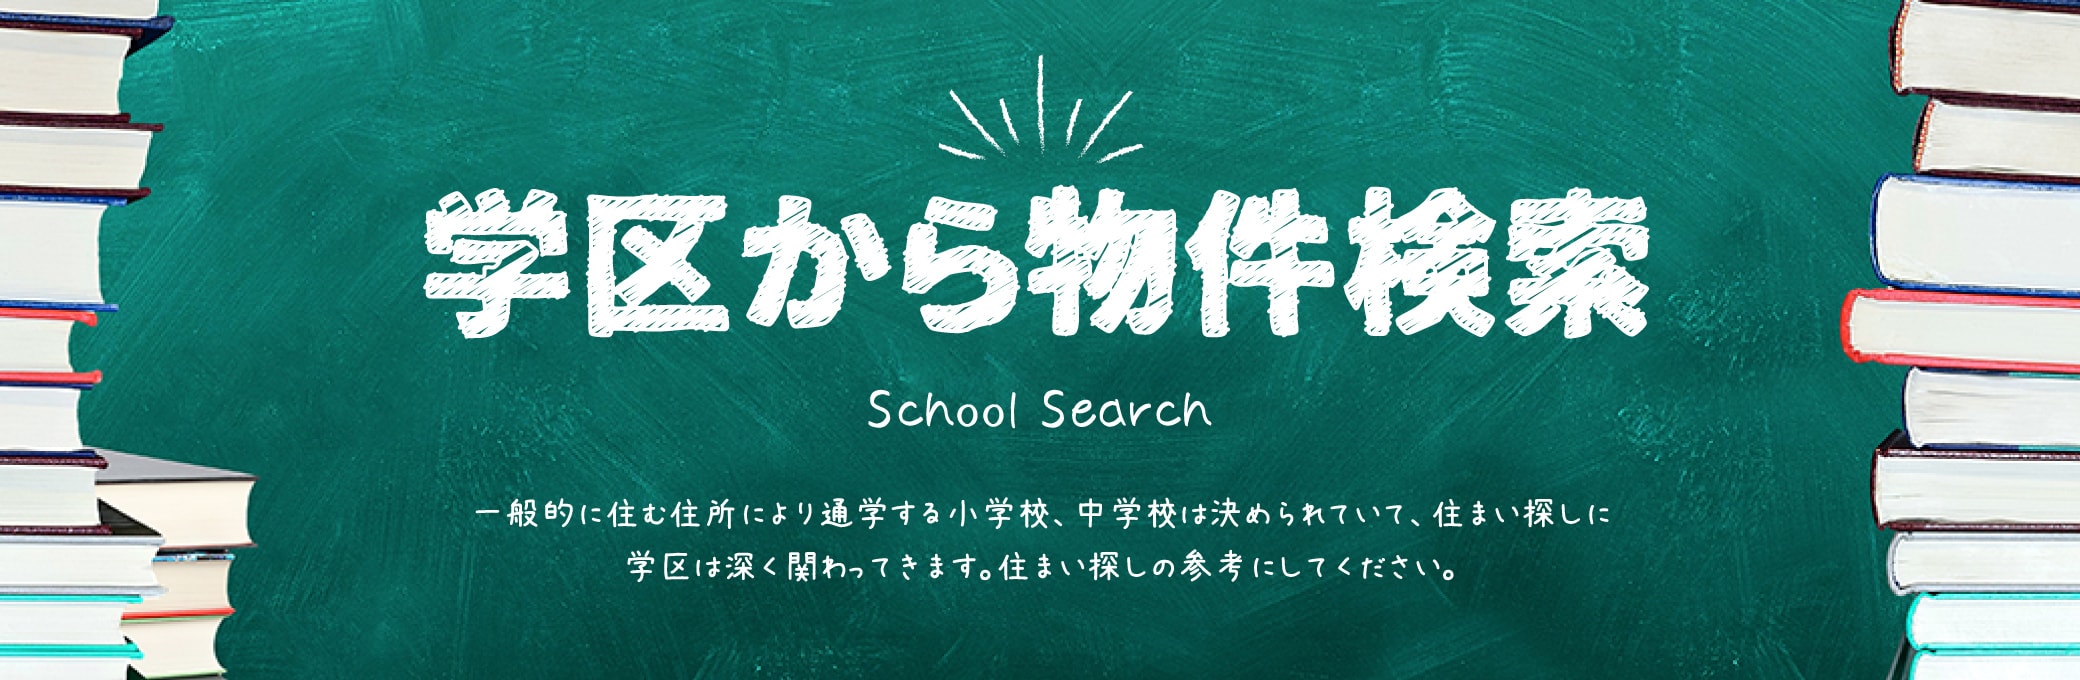 学区から物件検索 School Search 一般的に住む住所により通学する小学校、中学校は決められていて、住まい探しに学区は深く関わってきます。住まい探しの参考にしてください。